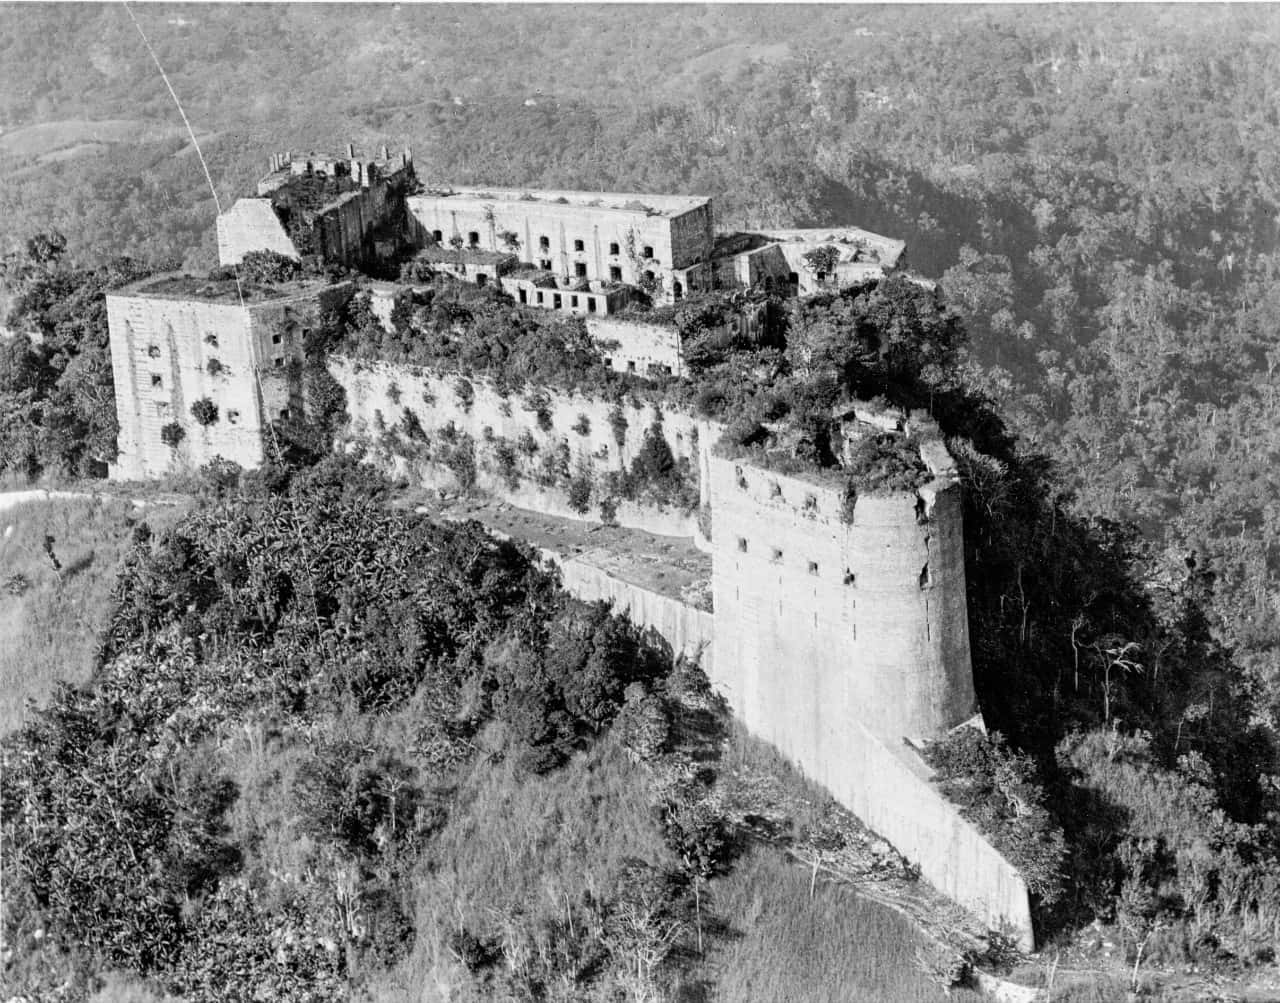 Citadelle Laferriere, a grandiose citadel in Haiti Wallpaper